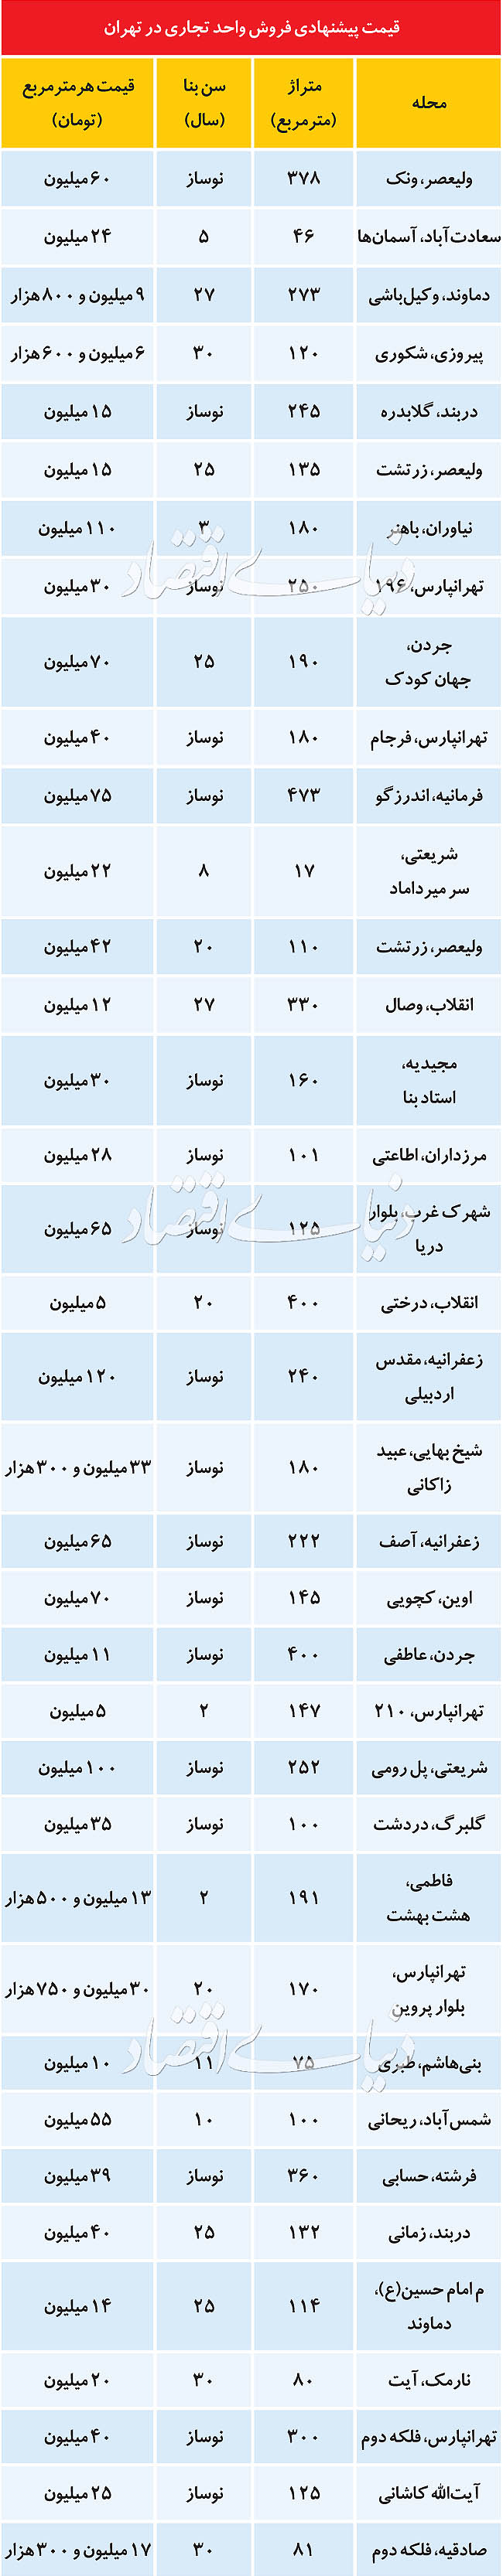 قیمت پیشنهادی فروش واحد تجاری در تهران + جدول